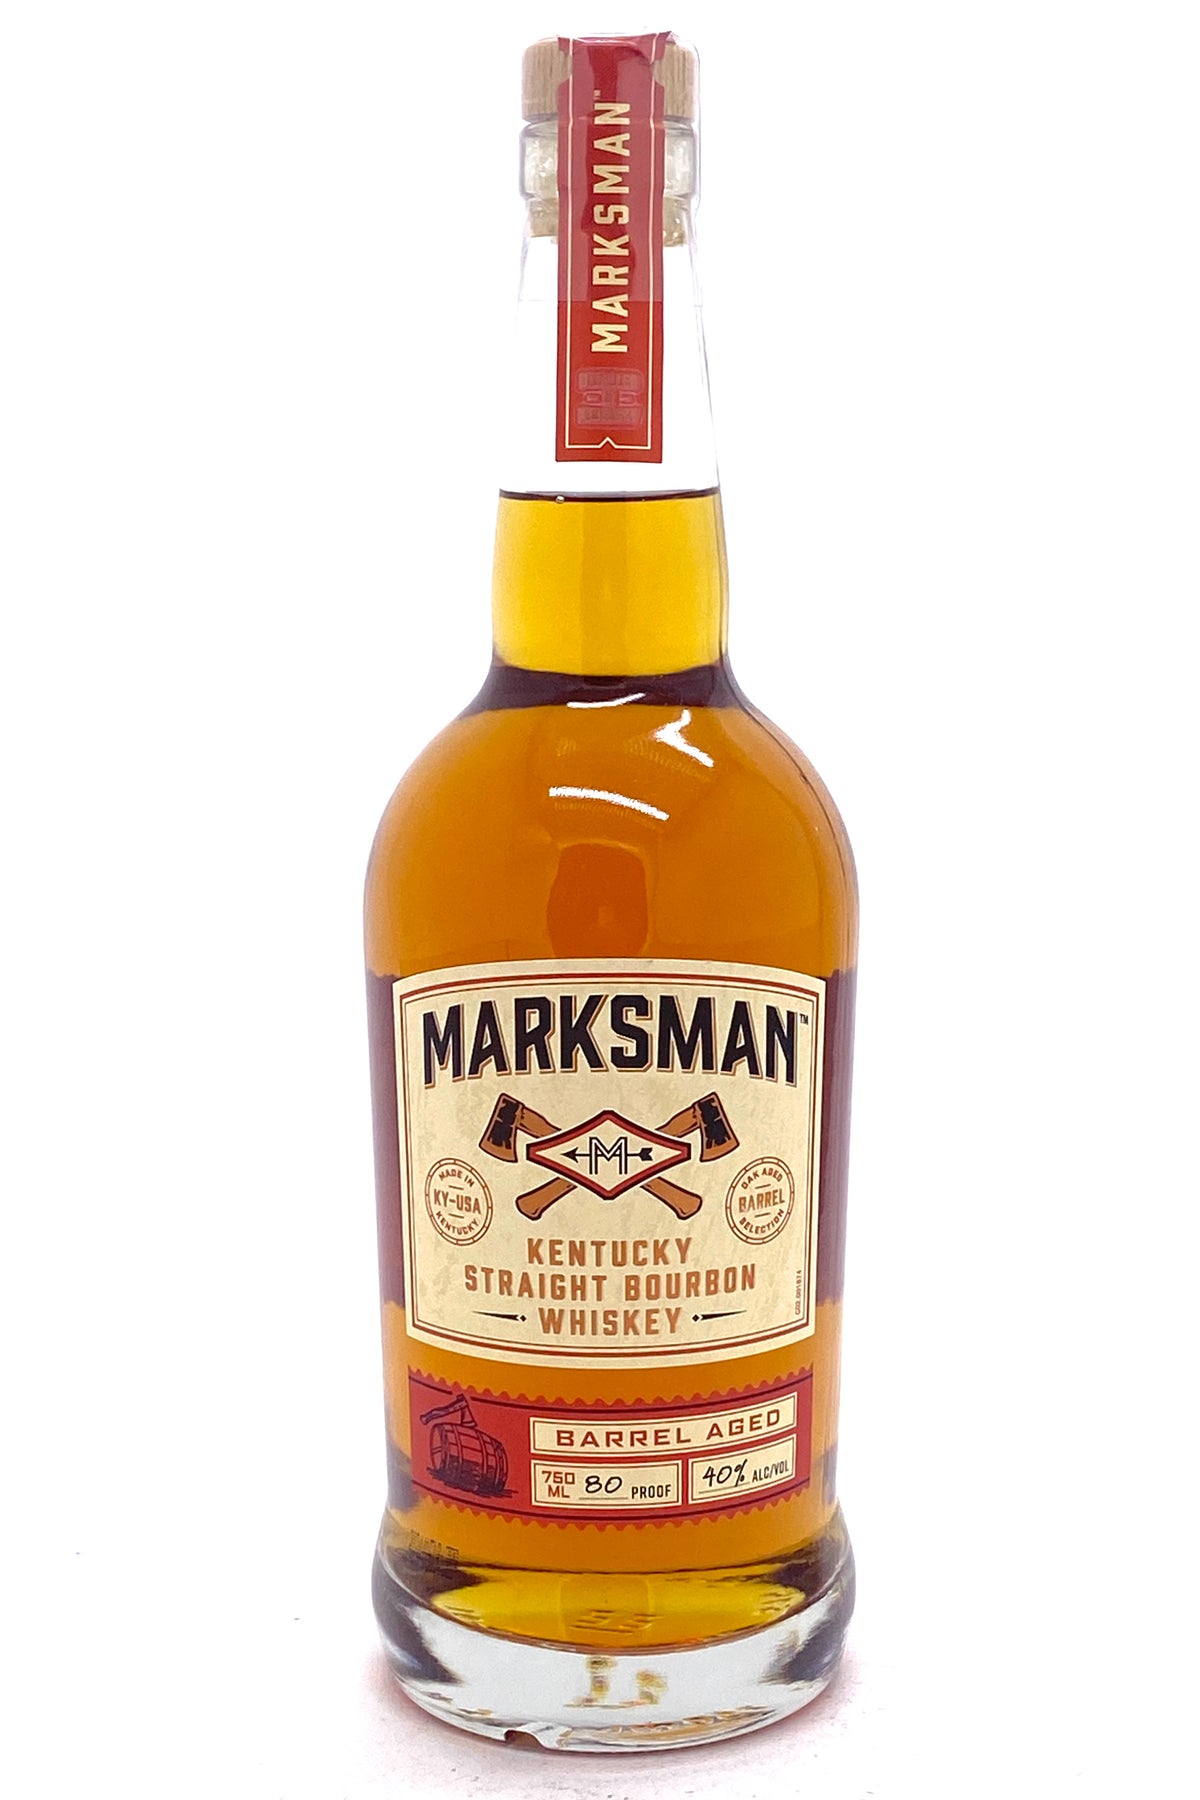 Marksman Bourbon Whiskey